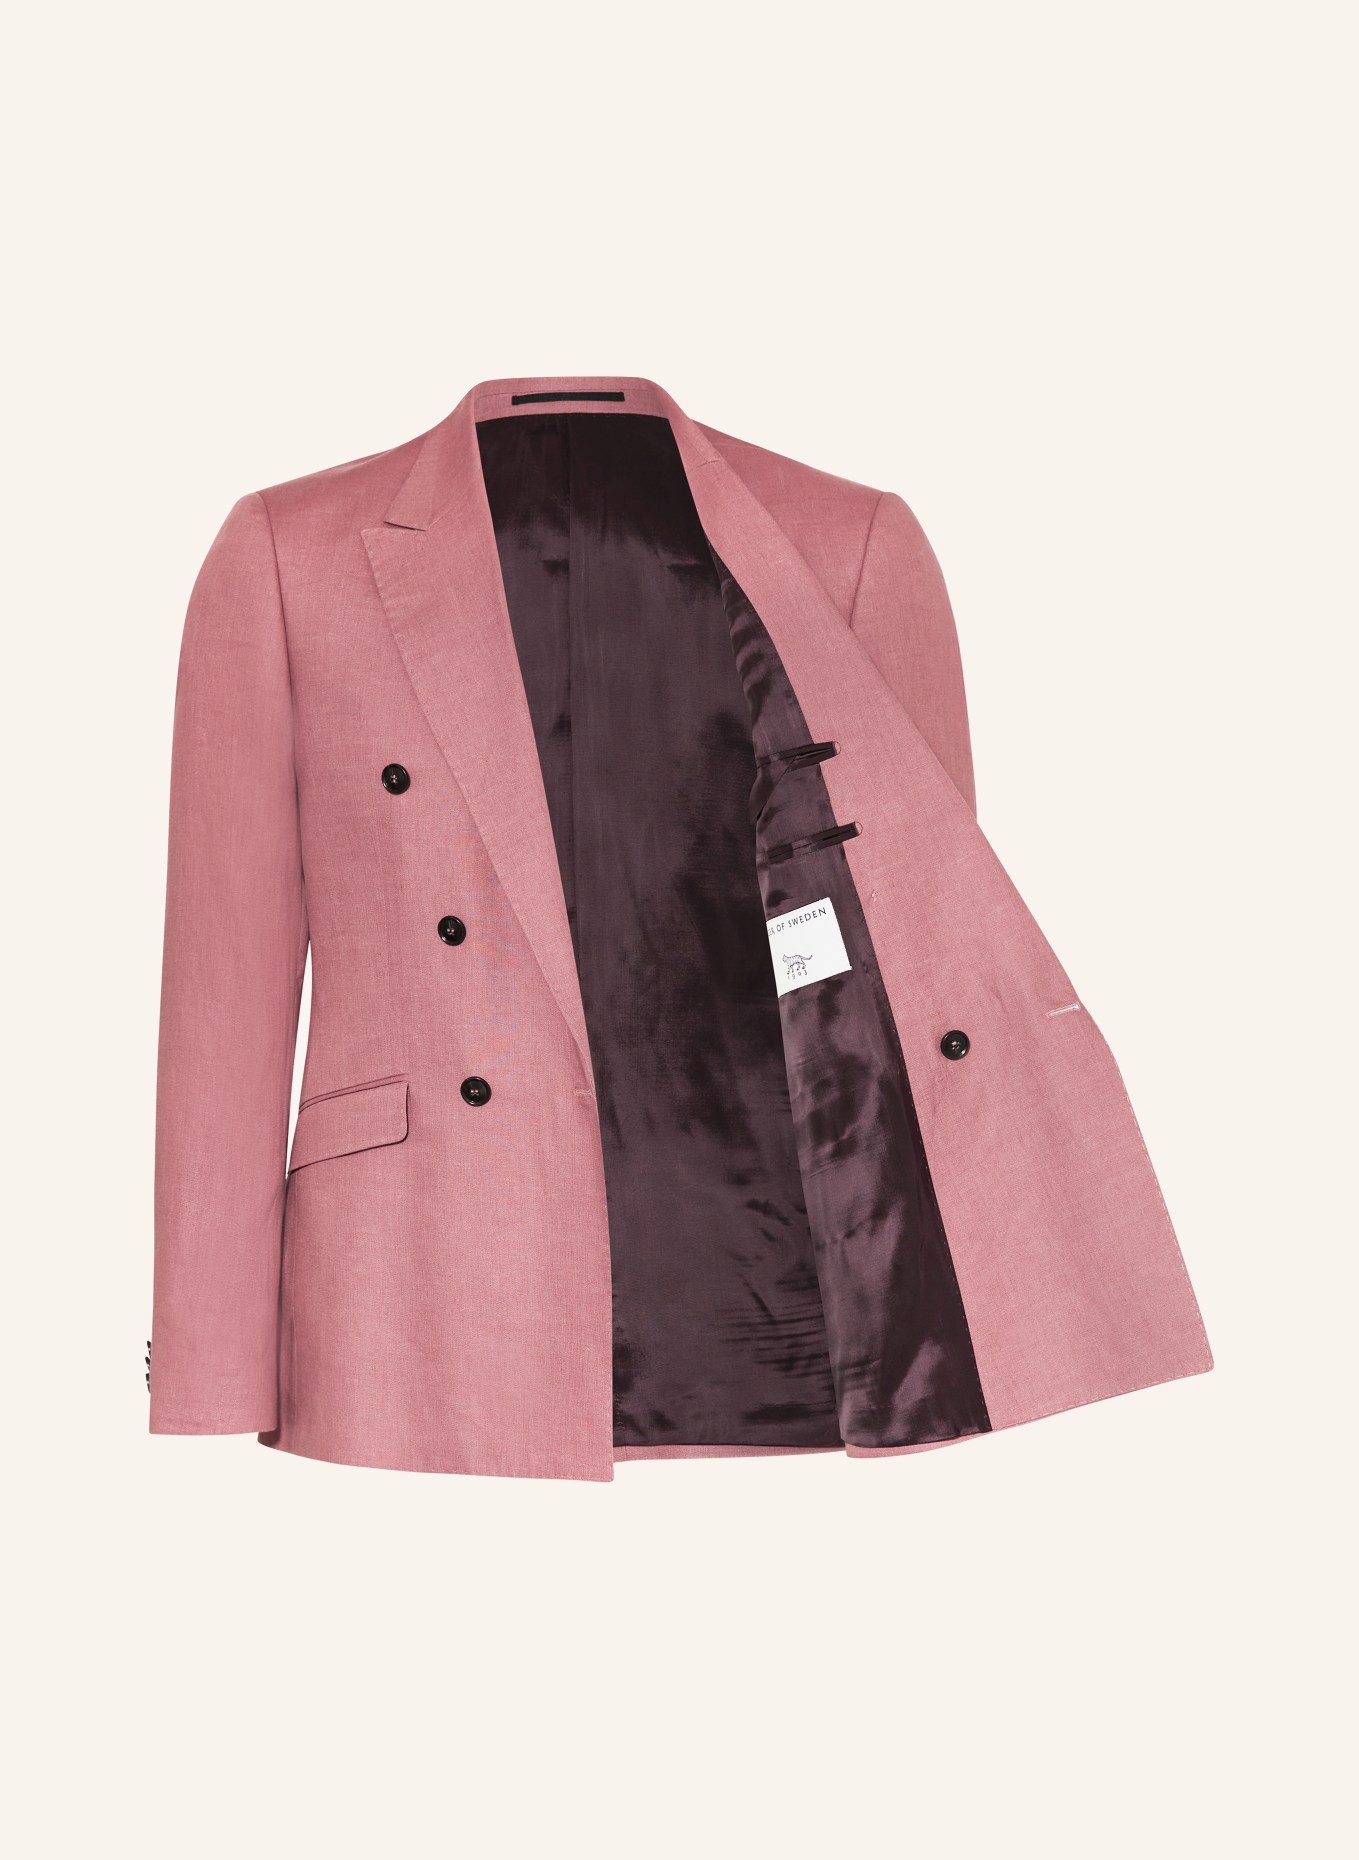 TIGER OF SWEDEN Suit jacket HELDIN slim fit in linen, Color: 1BS Rose Brown (Image 4)